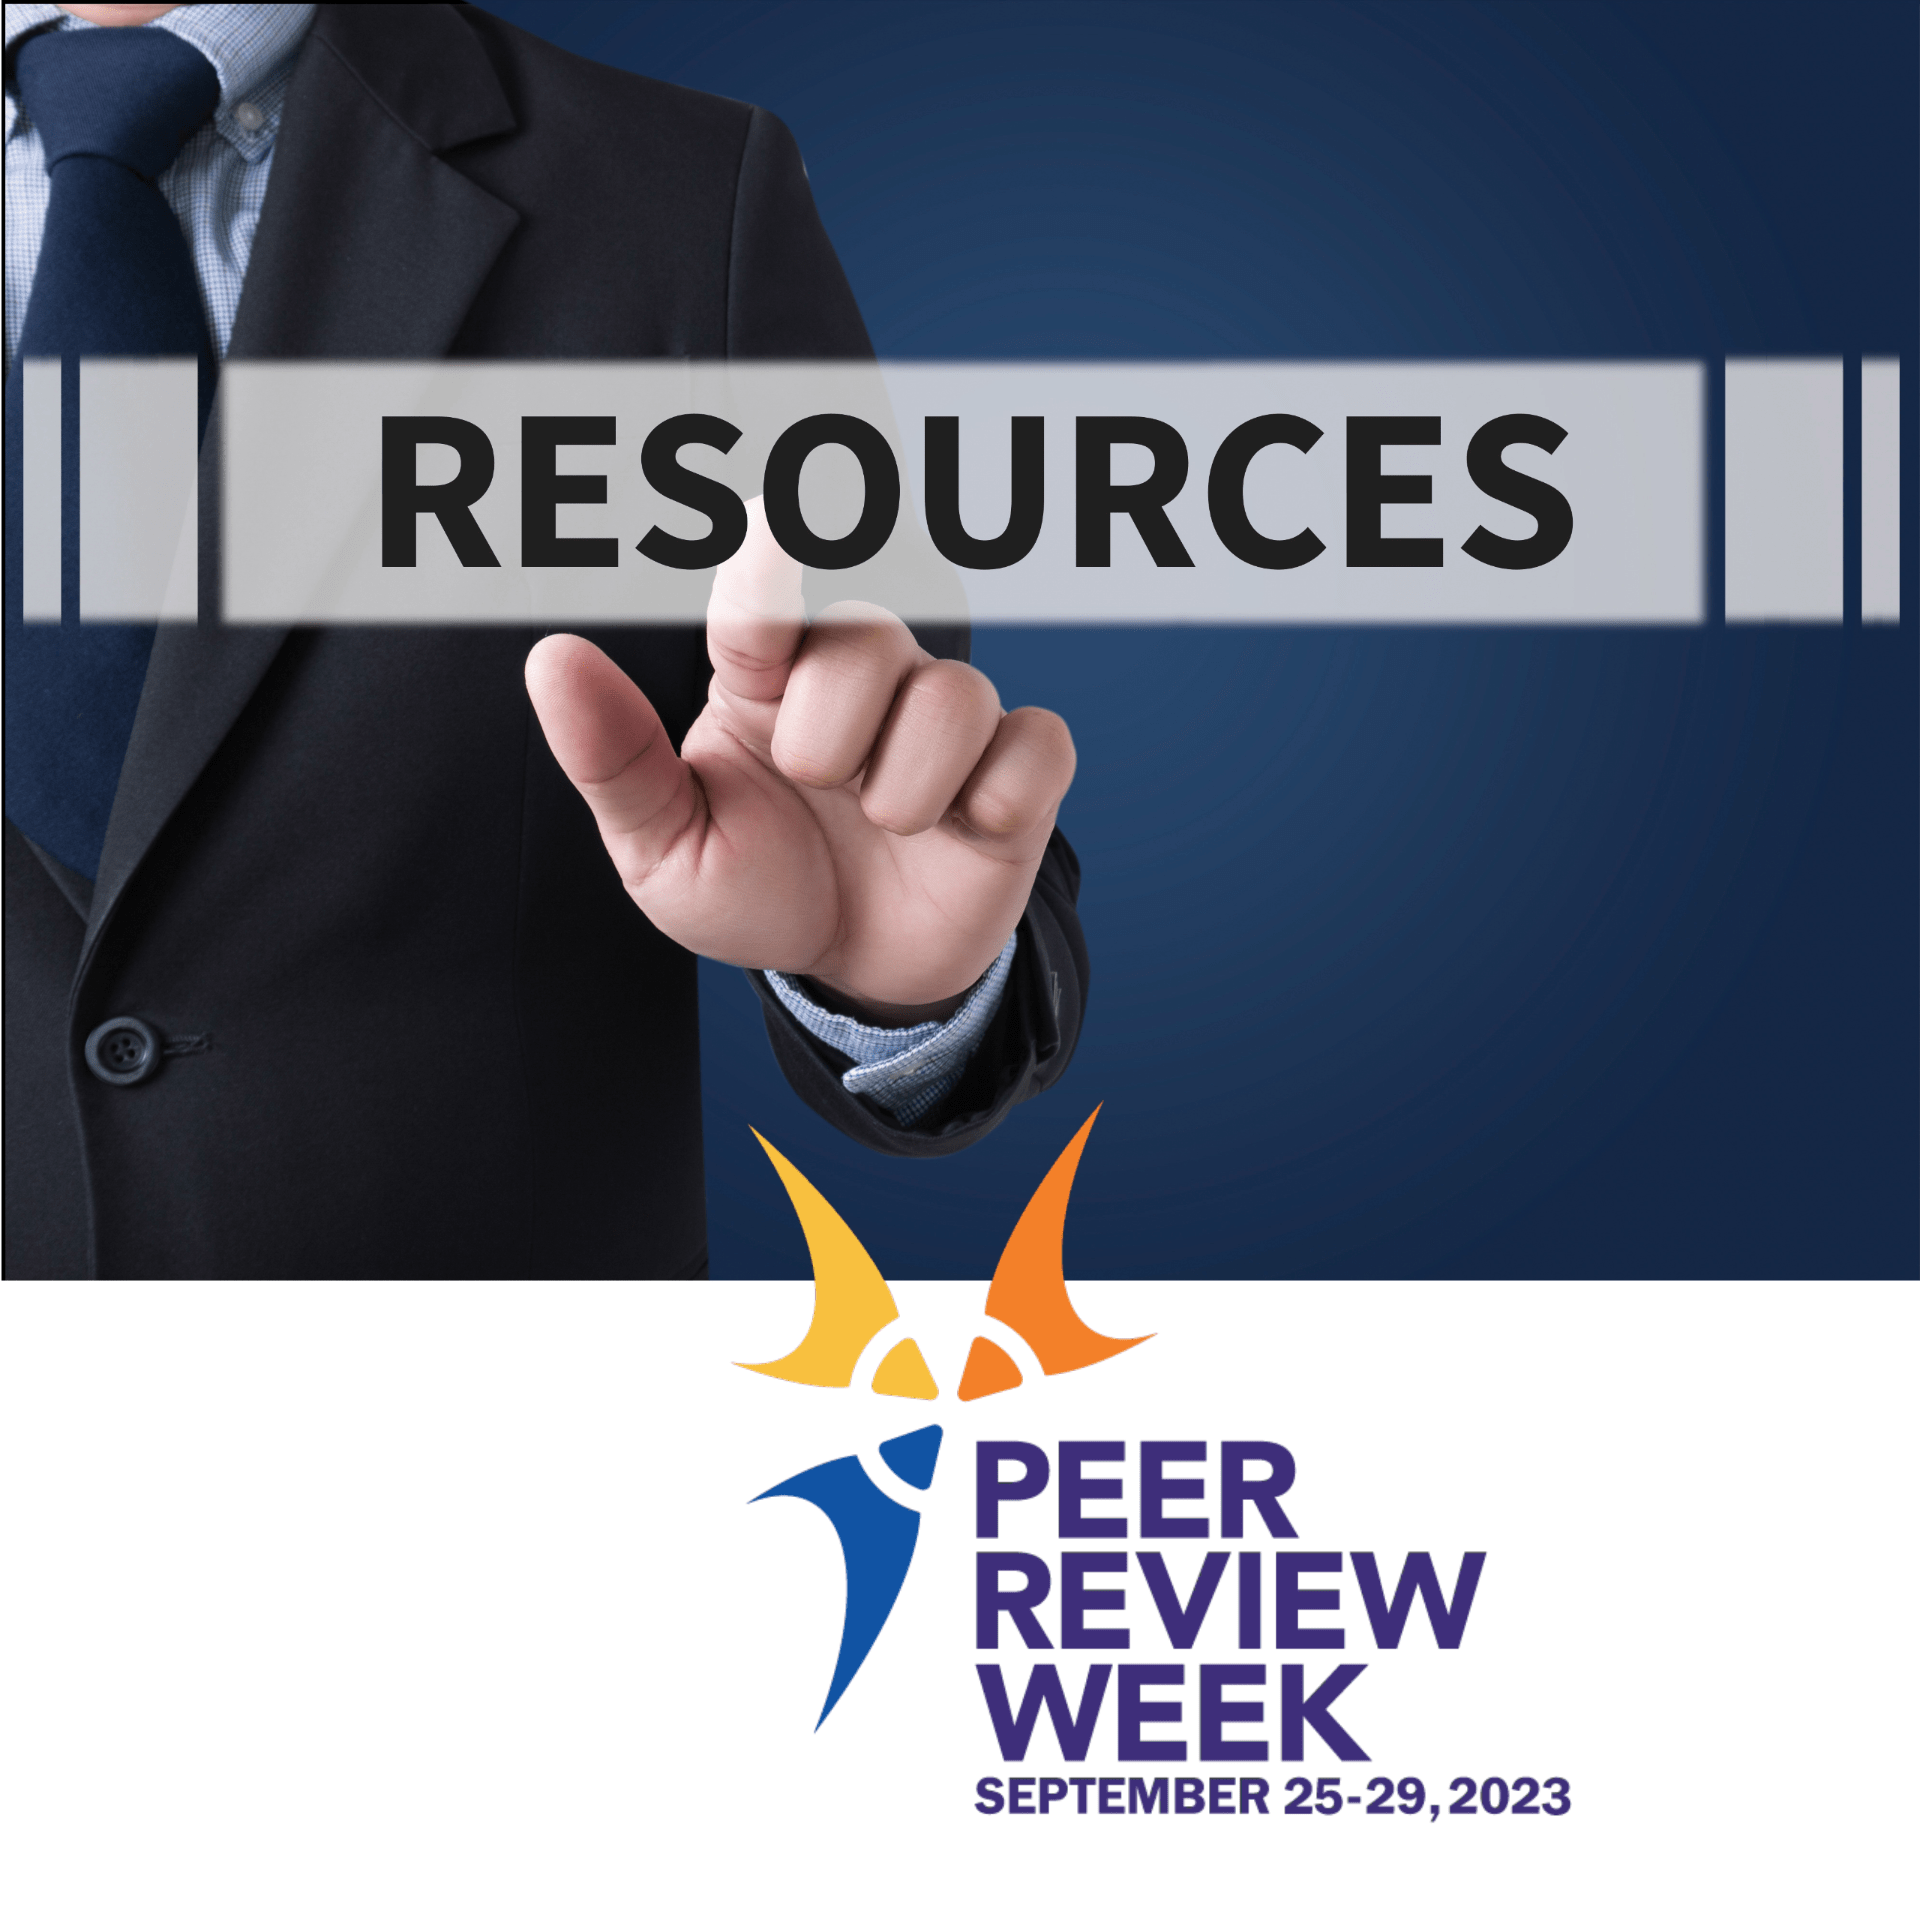 Peer Review Week September 25-29, 2023 Resources